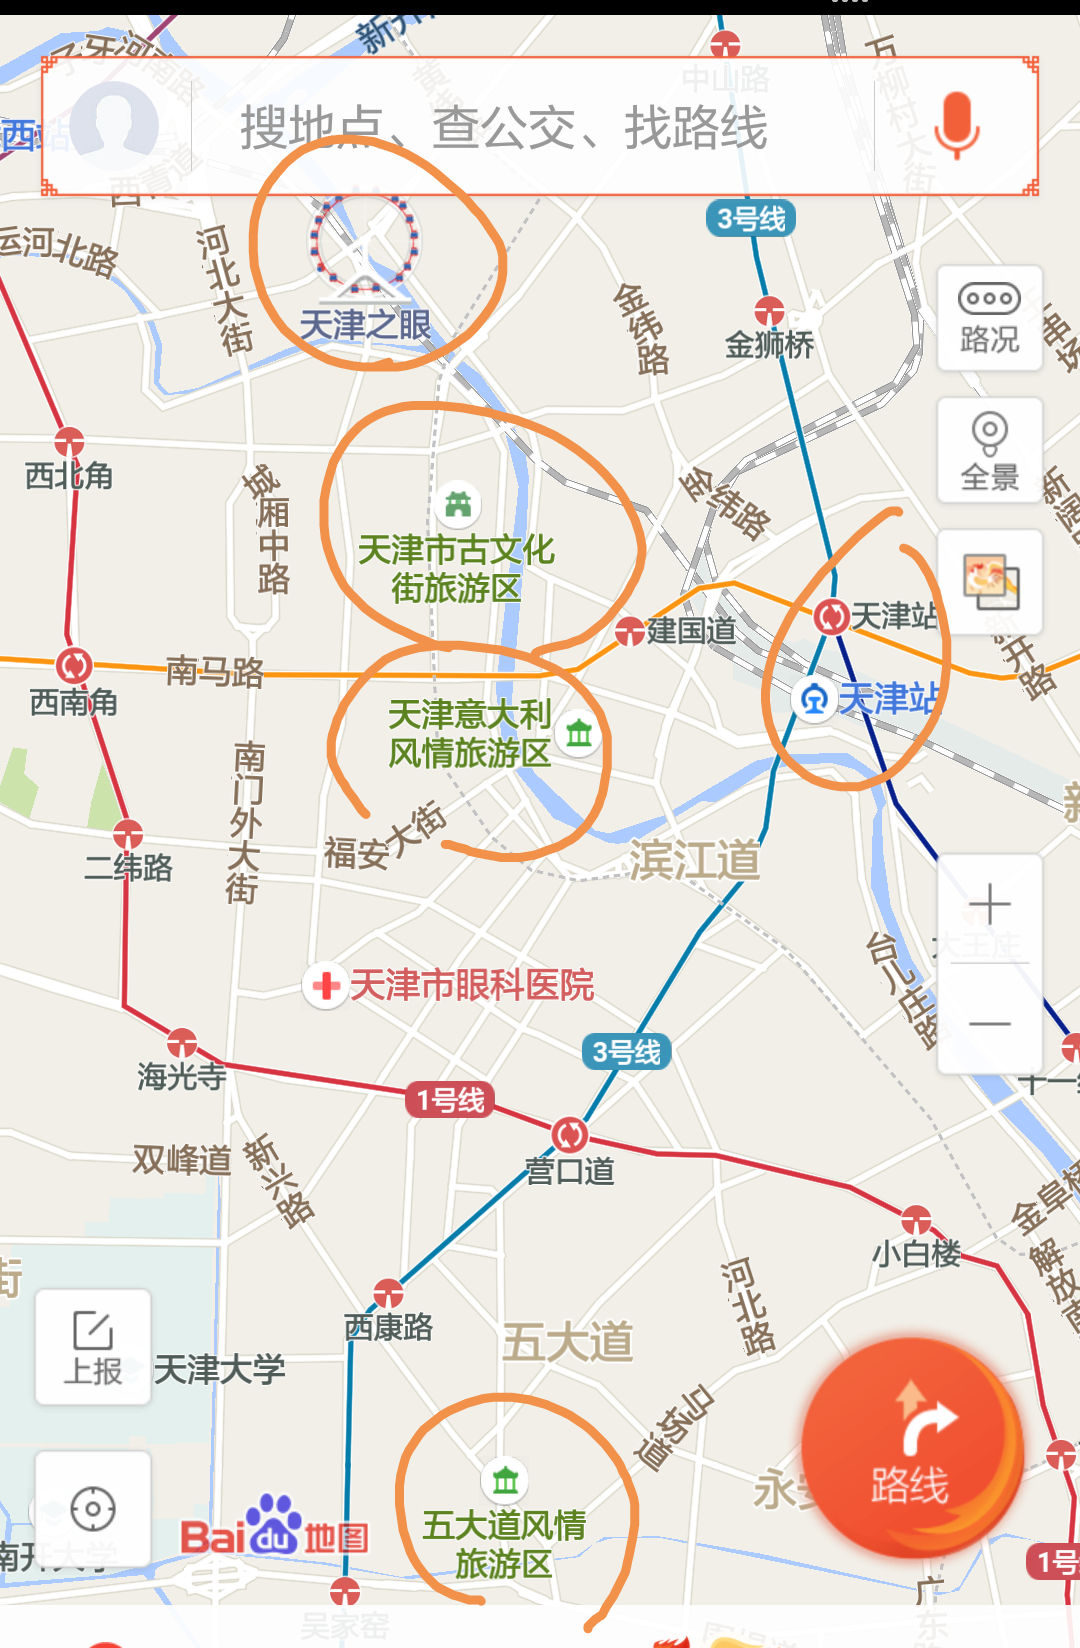 想去天津玩两天,现在不知道是在天津站下车还是天津西